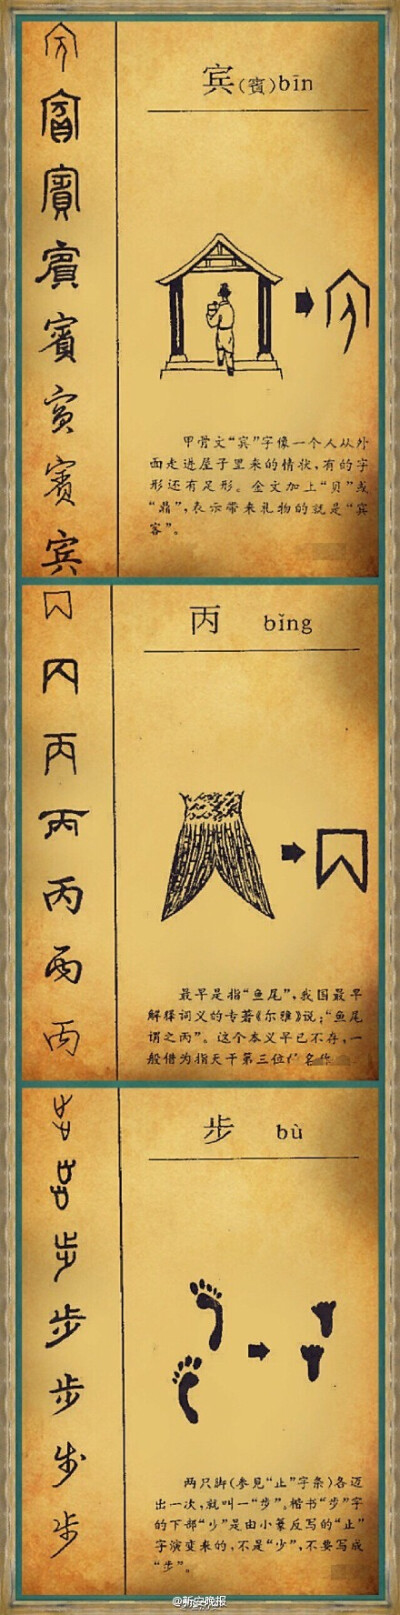 《汉字演变集萃》】汉字,记录汉语的文字